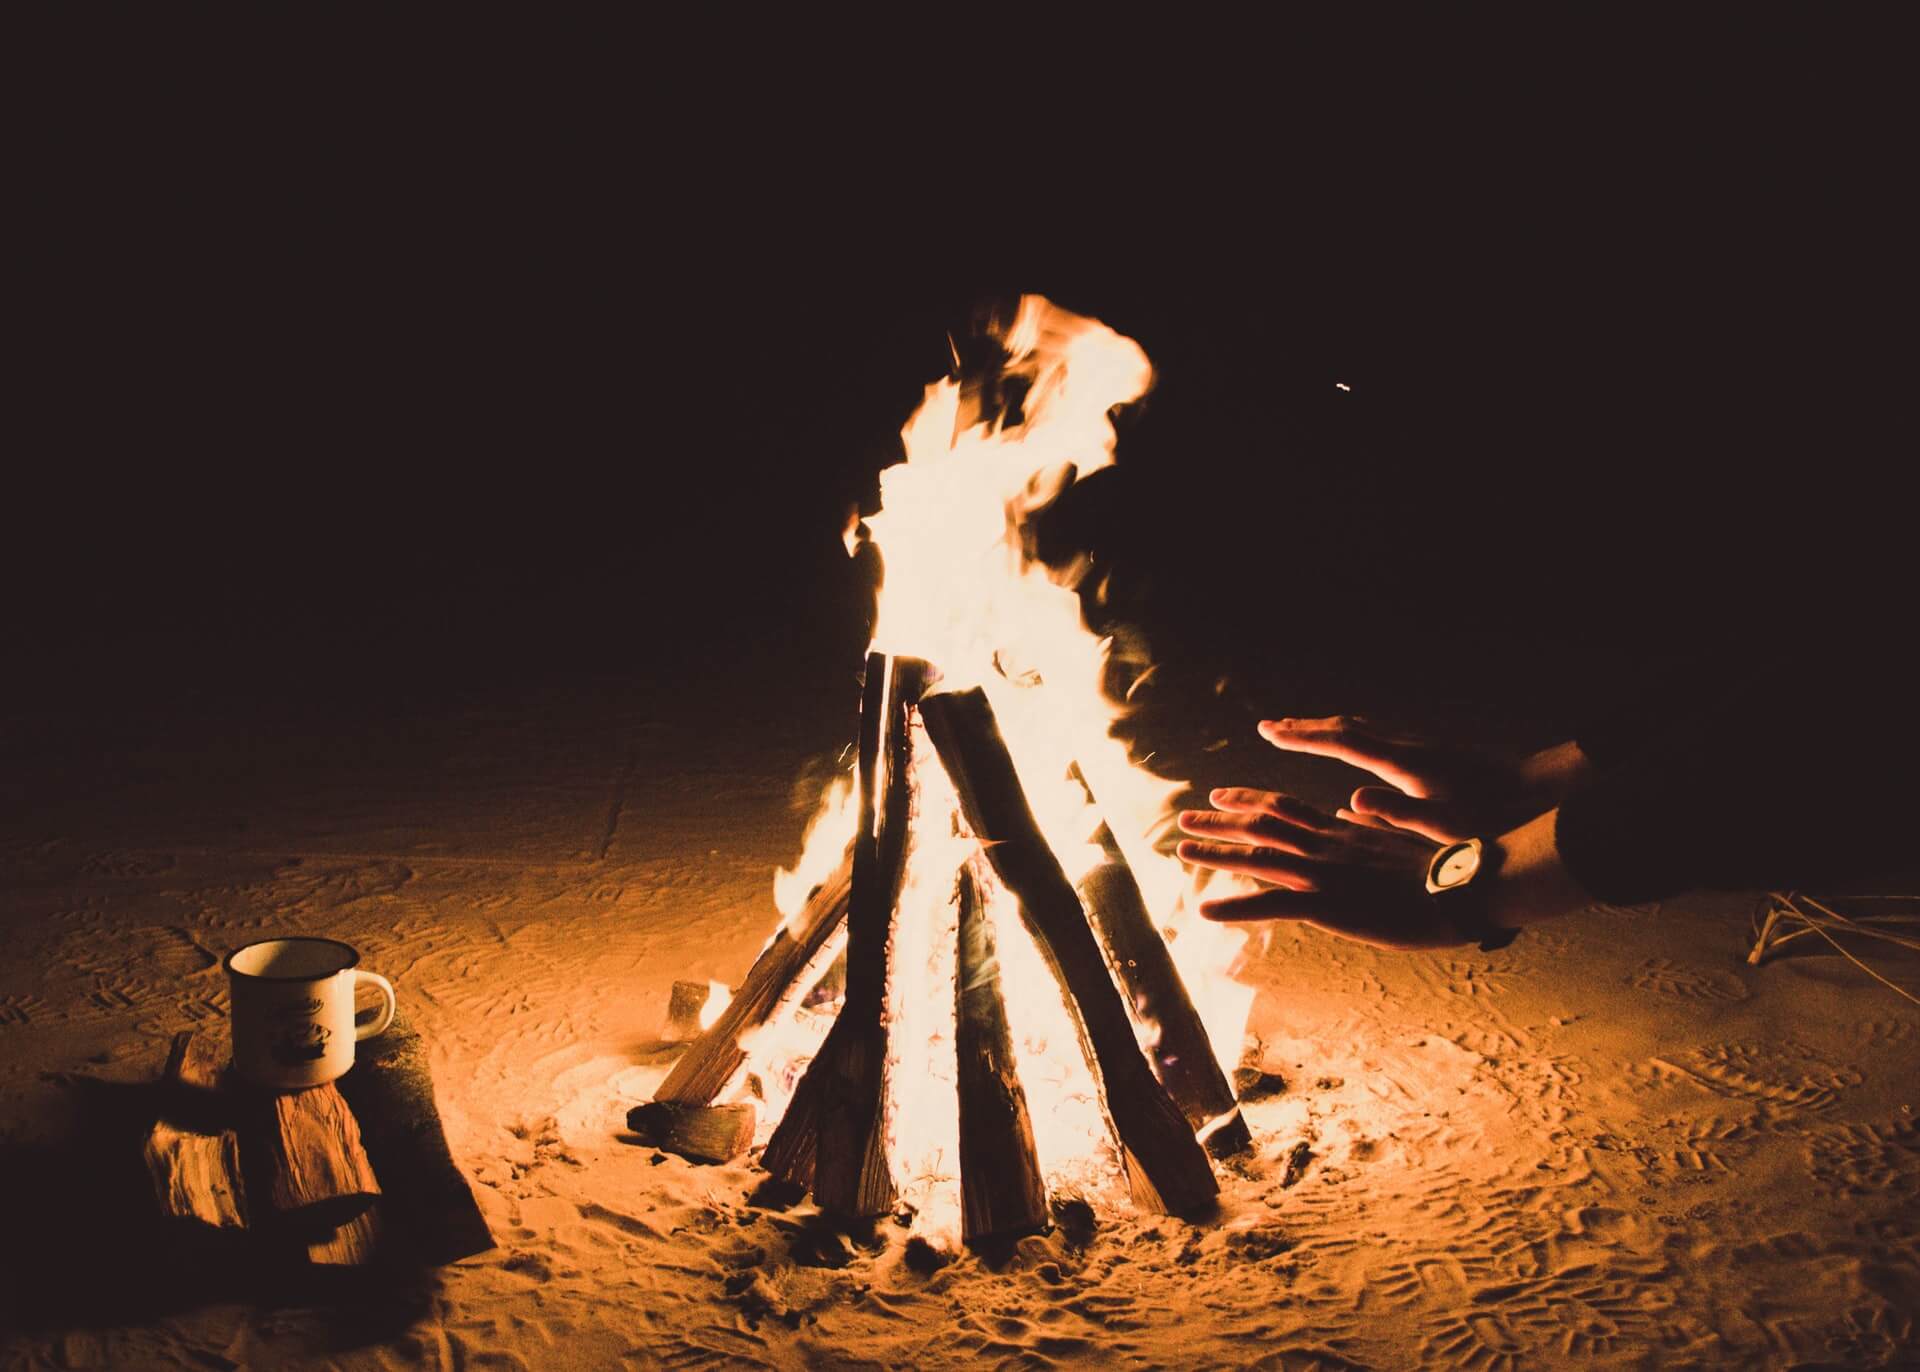 Bonfire Lohri